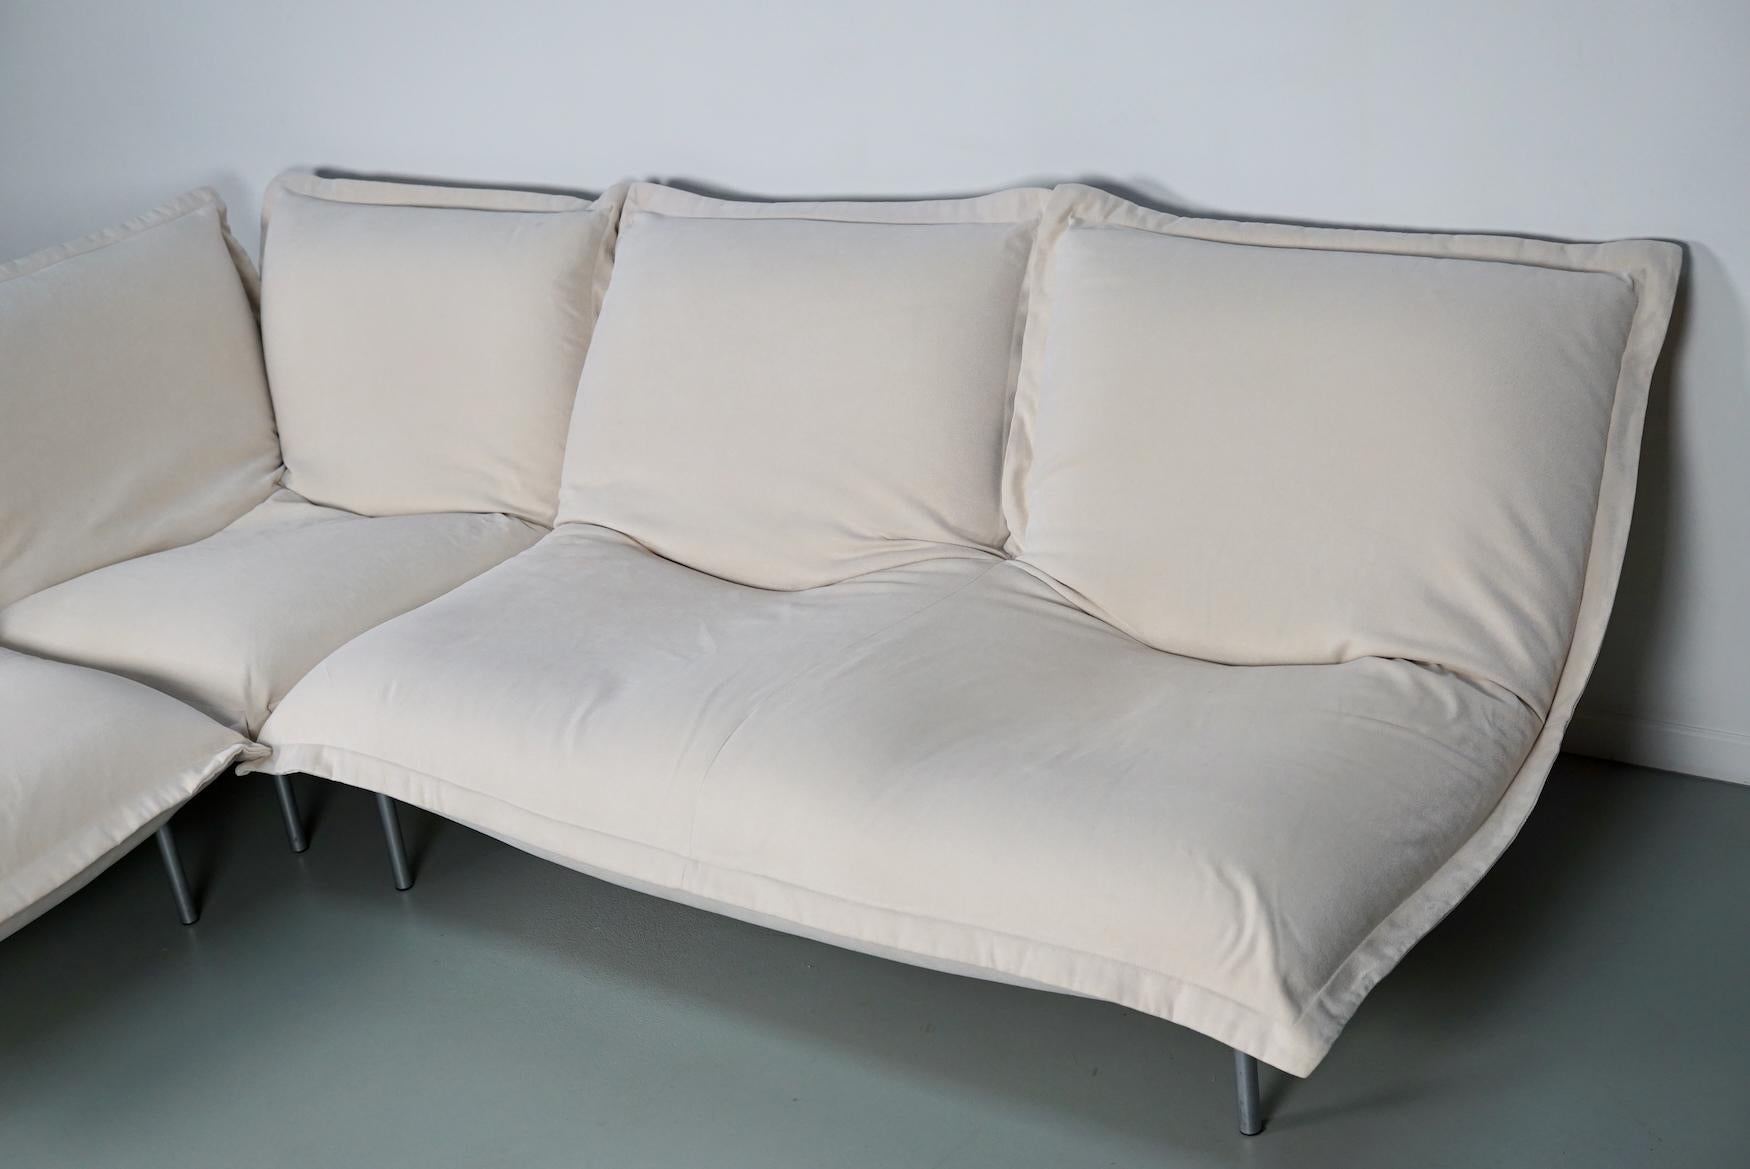 Calin Corner Sofa Set by Pascal Mourgue for Cinna / Ligne Roset - 4 seater 6